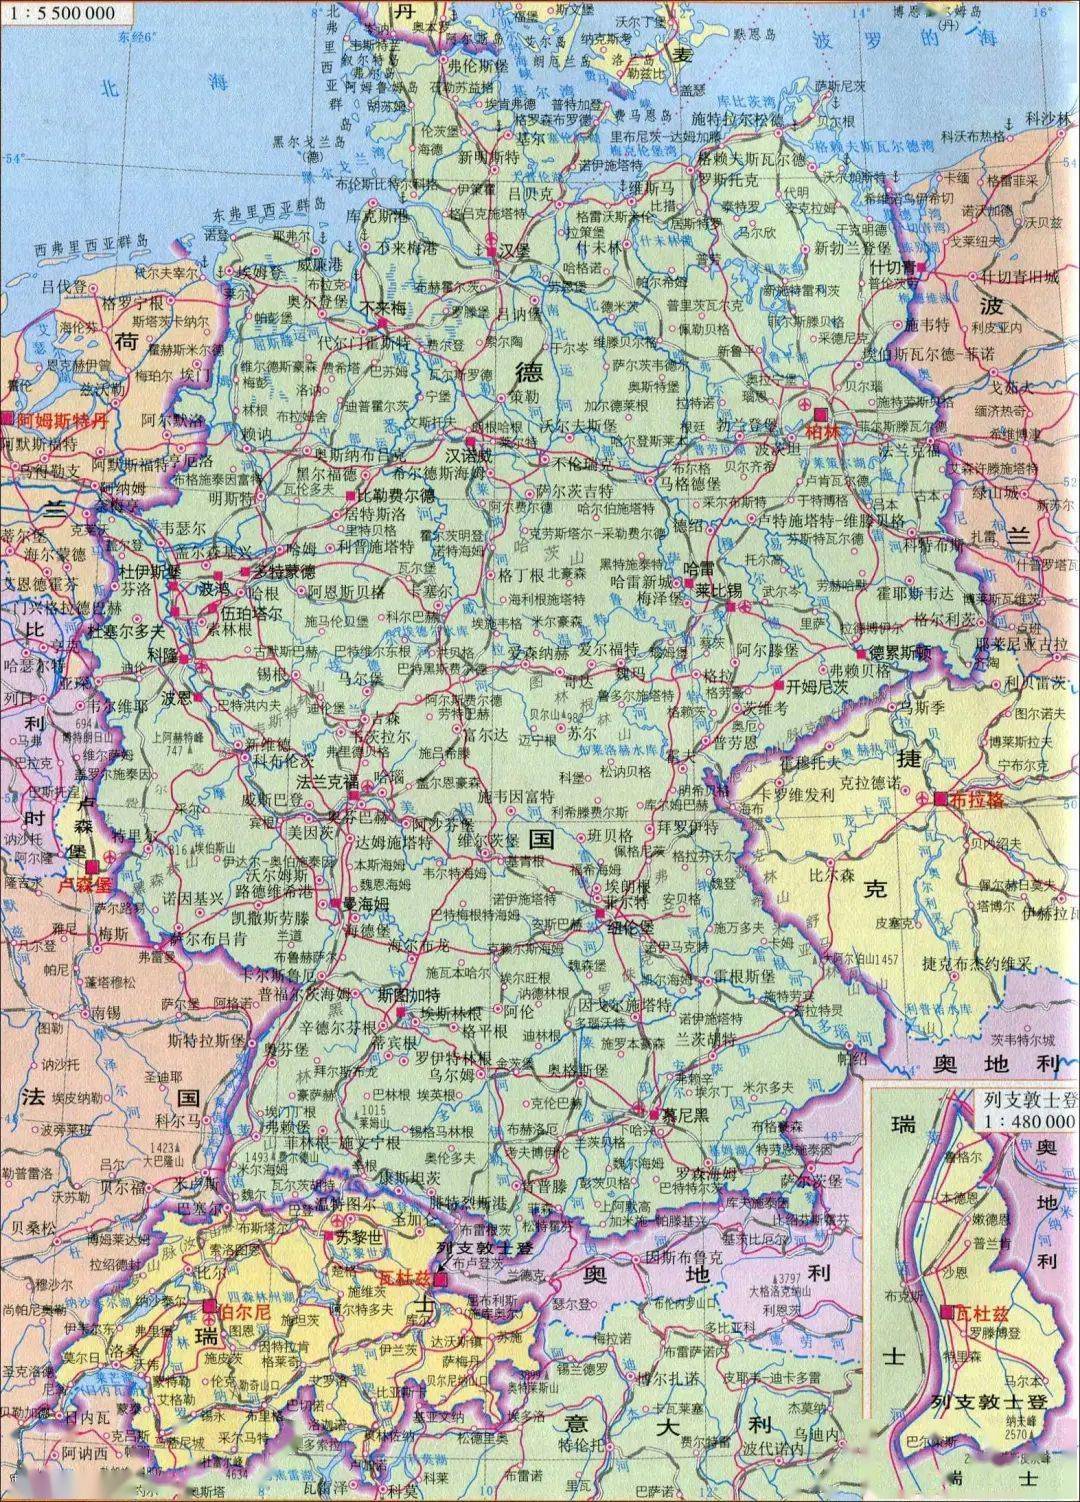 德国国土面积多少图片